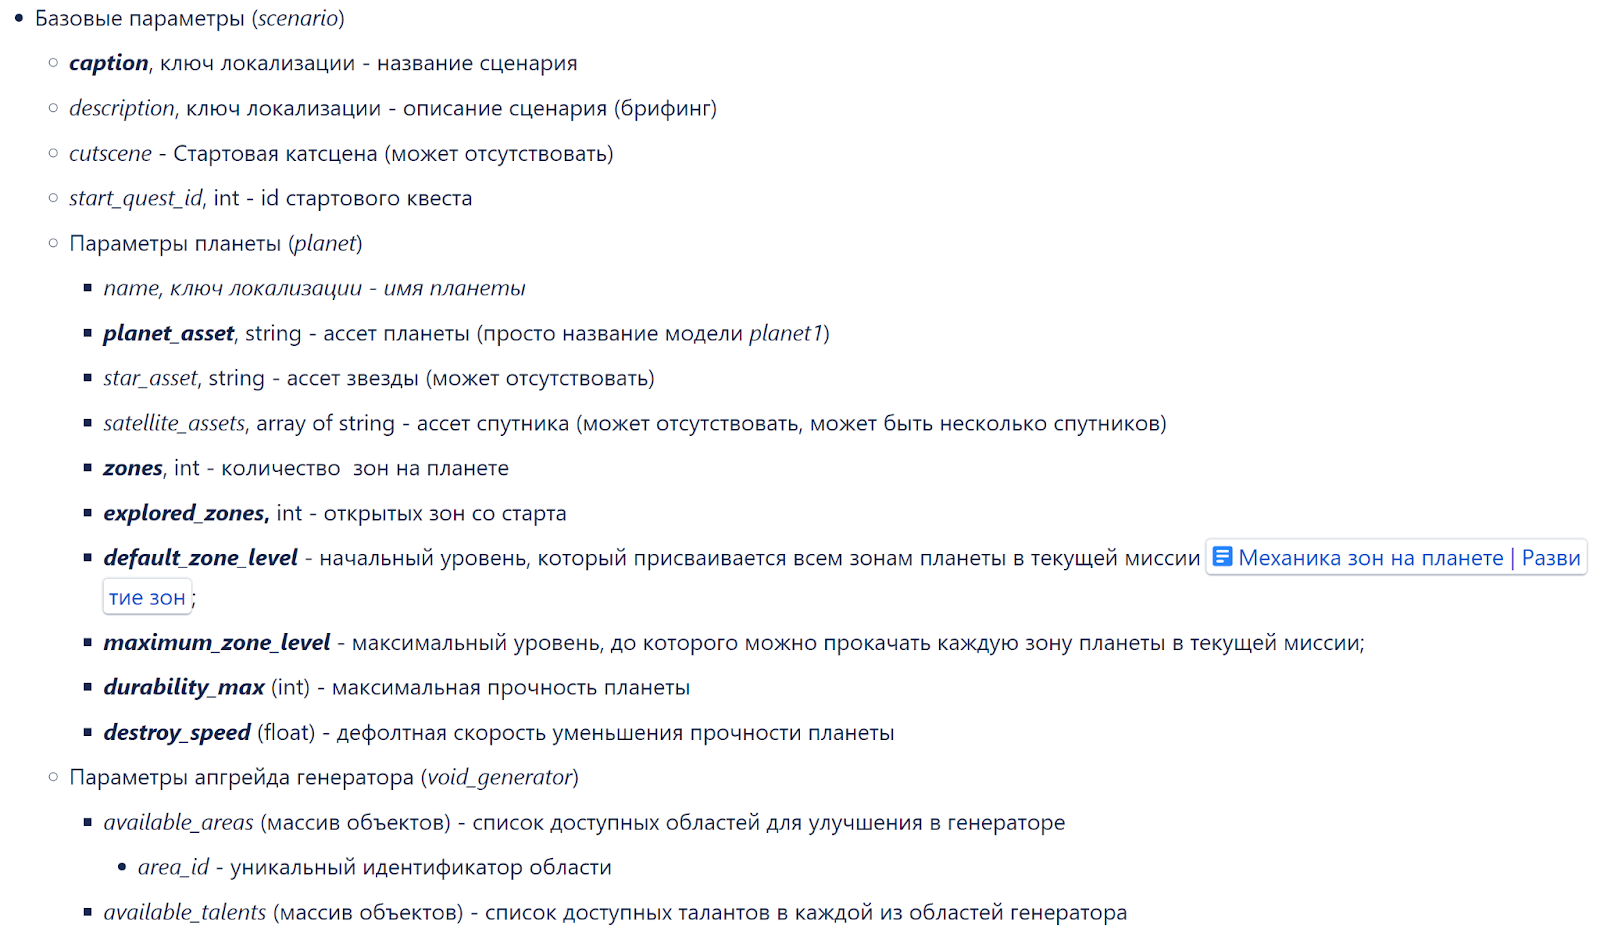 Рис 1. Фрагмент страницы Confluence со списком параметров JSON-скрипта, описывающего сценарии